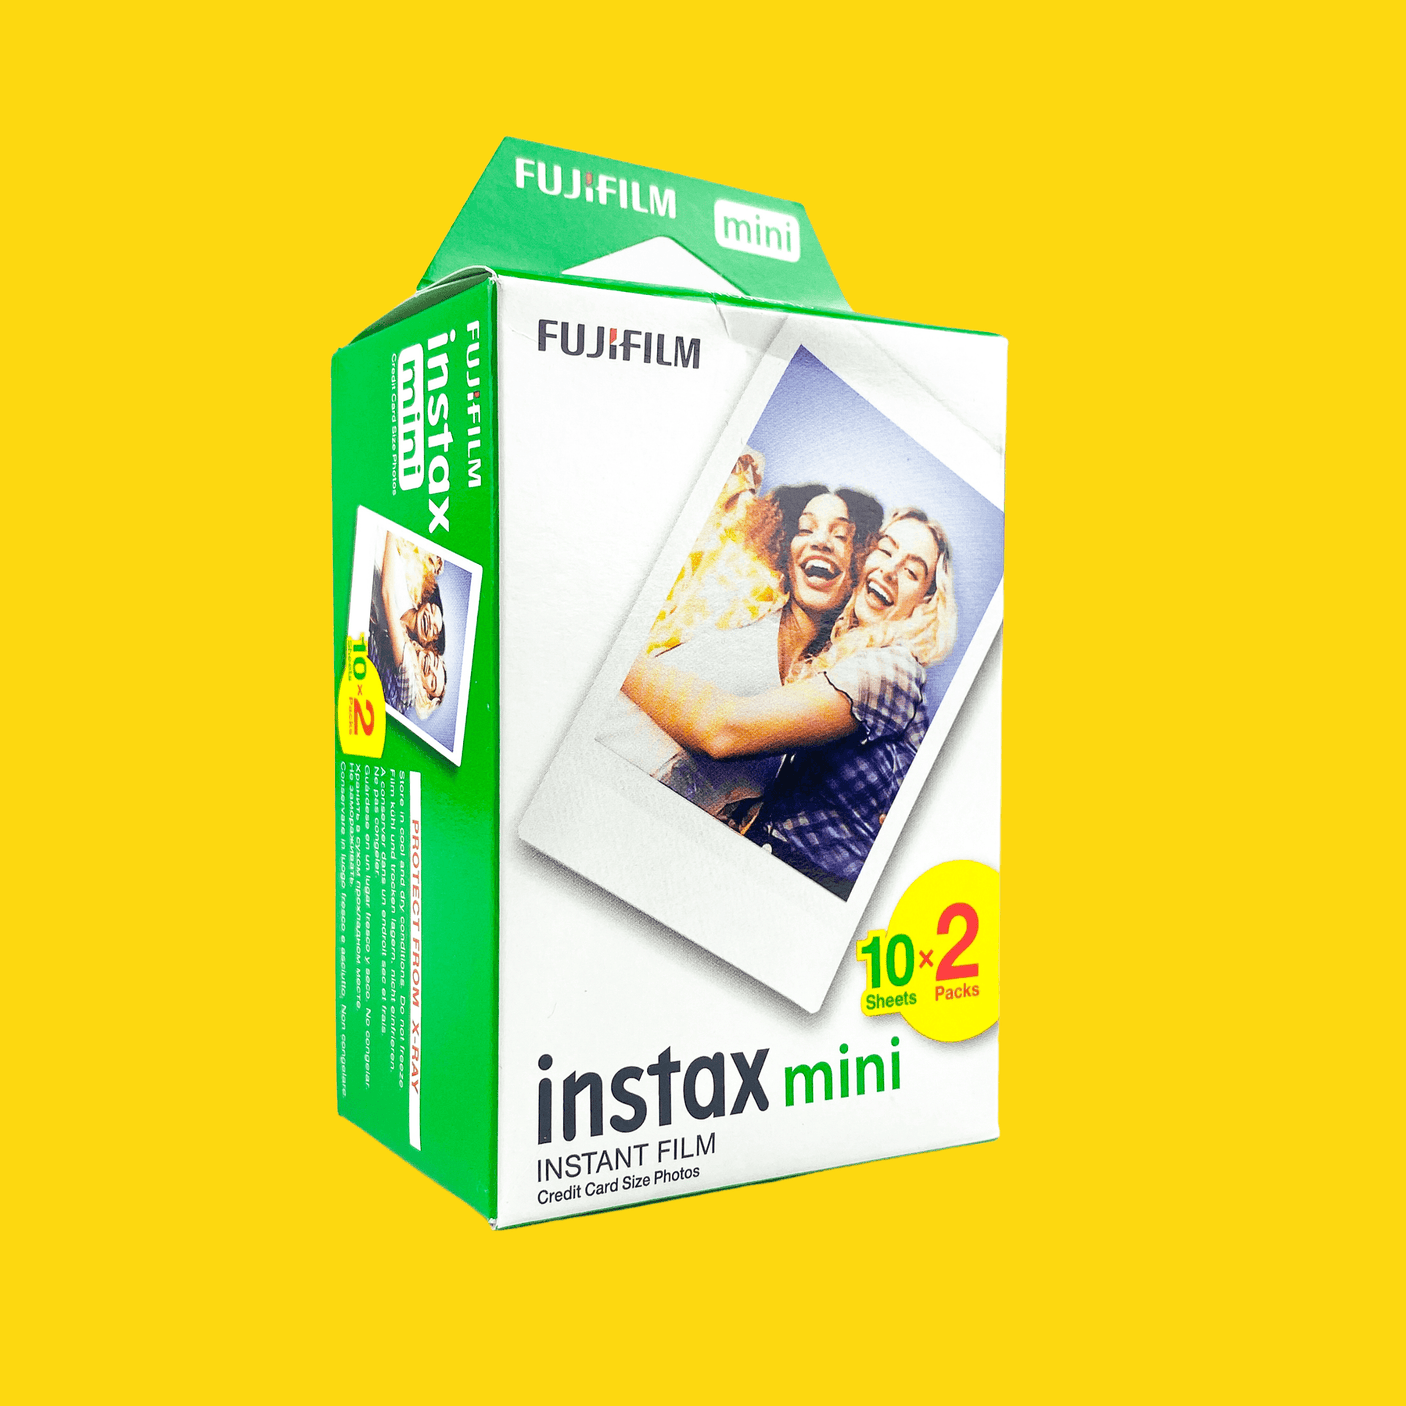 Fujifilm Instax Mini 12 Camera with instax mini film - 20 shots